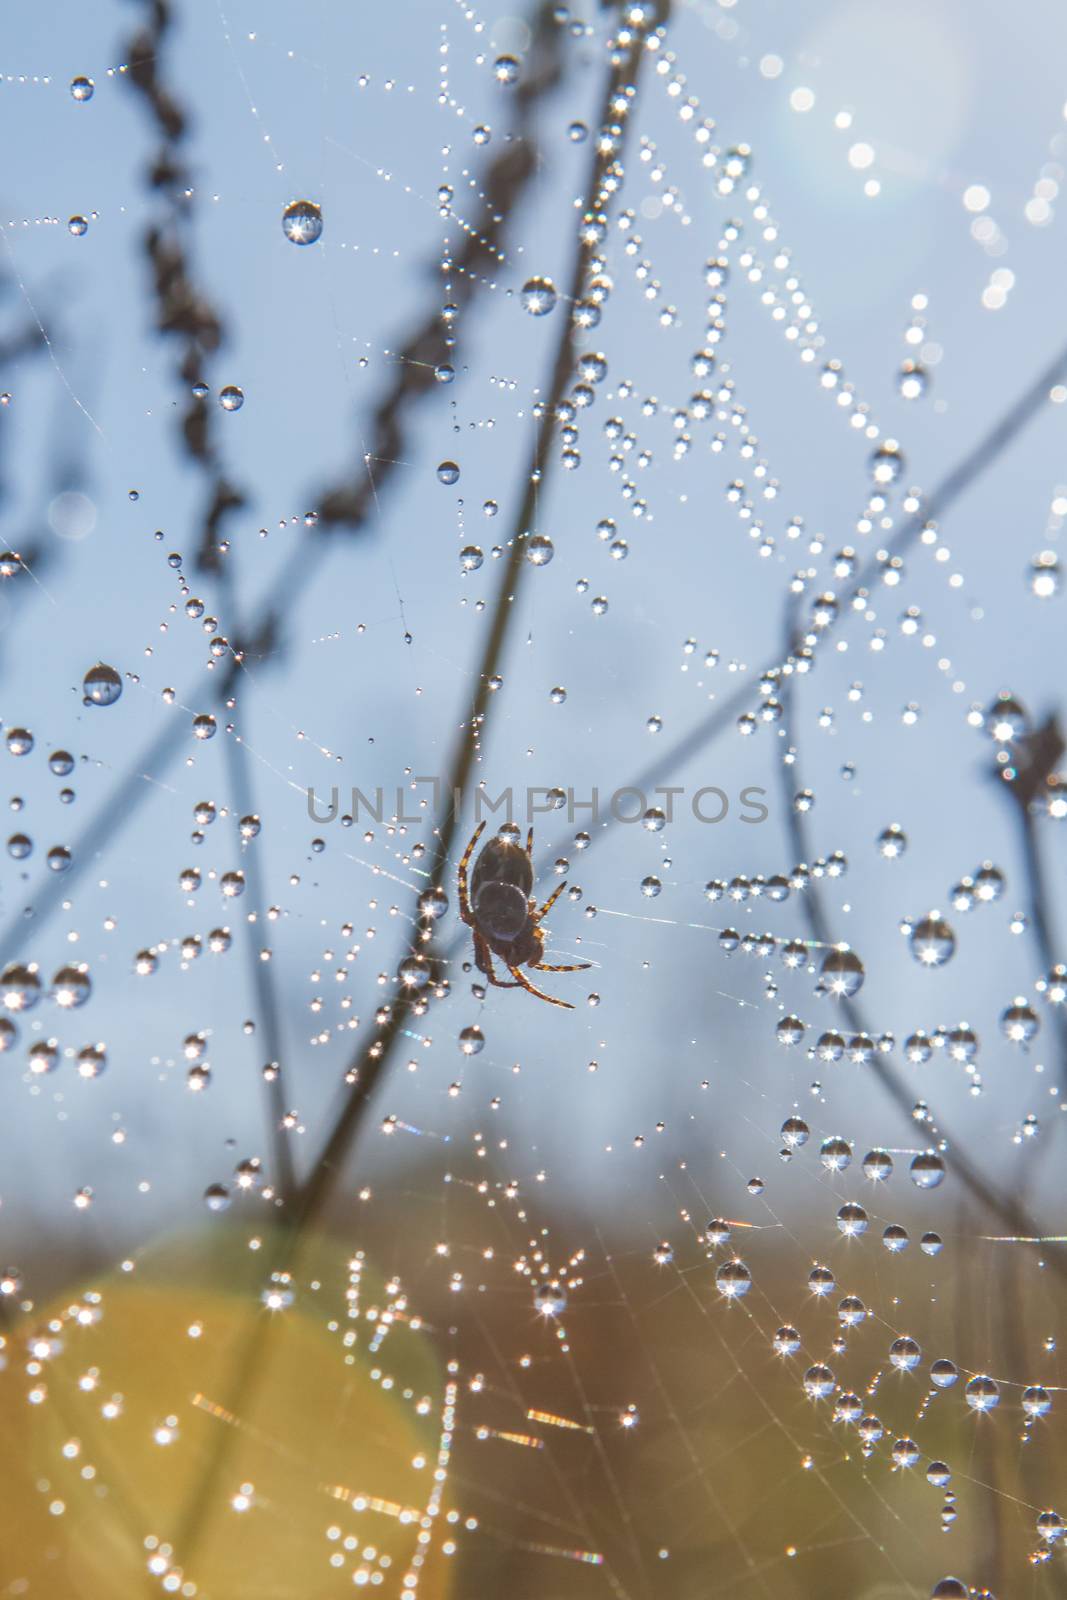 dew on a spider web by olgagordeeva